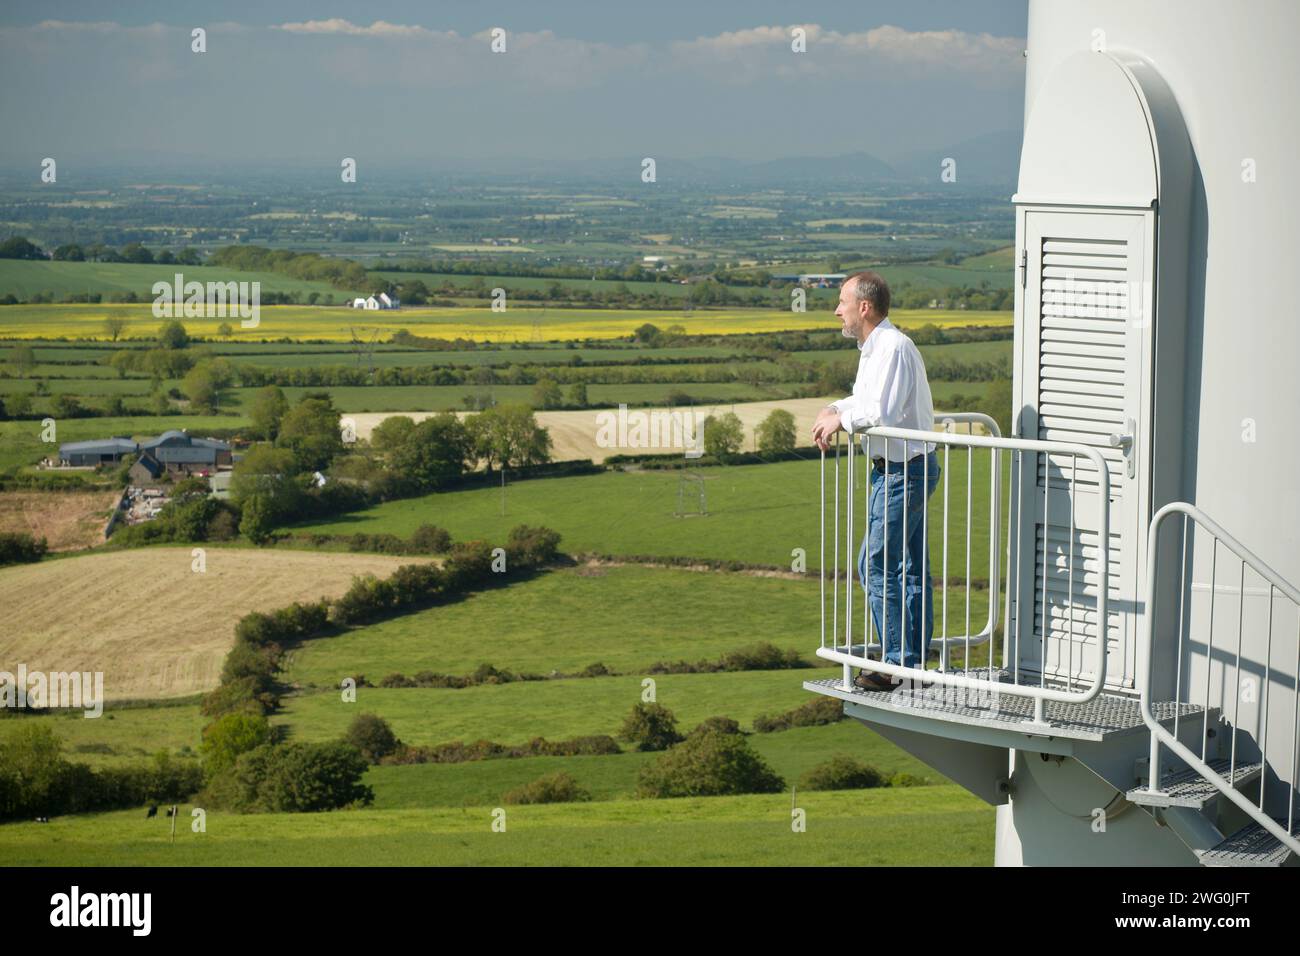 Un homme examine la vue sur Collon, Irlande depuis les marches d'une éolienne. Banque D'Images